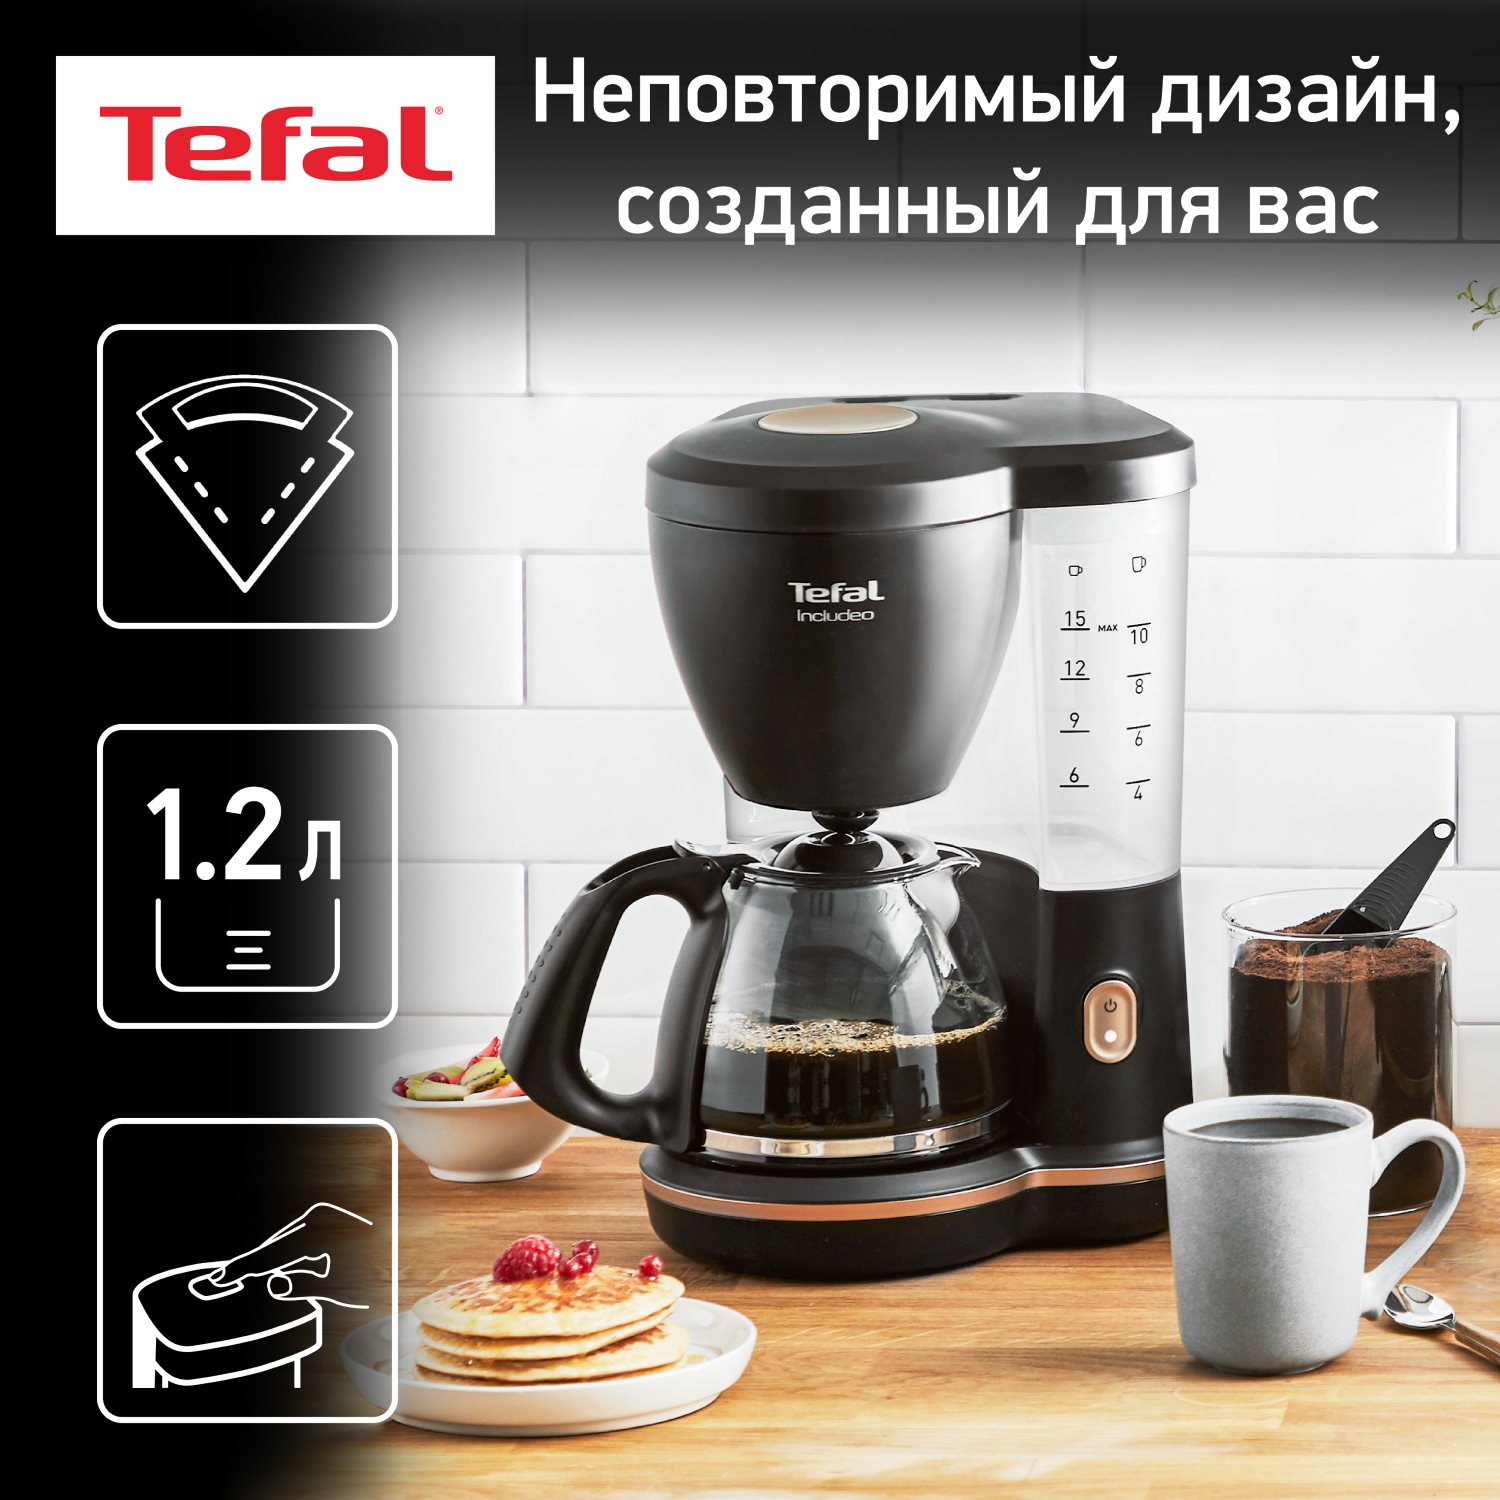 Кофеварка капельного типа Tefal Includeo CM533811, черный кофеварка капельного типа tefal includeo cm533811